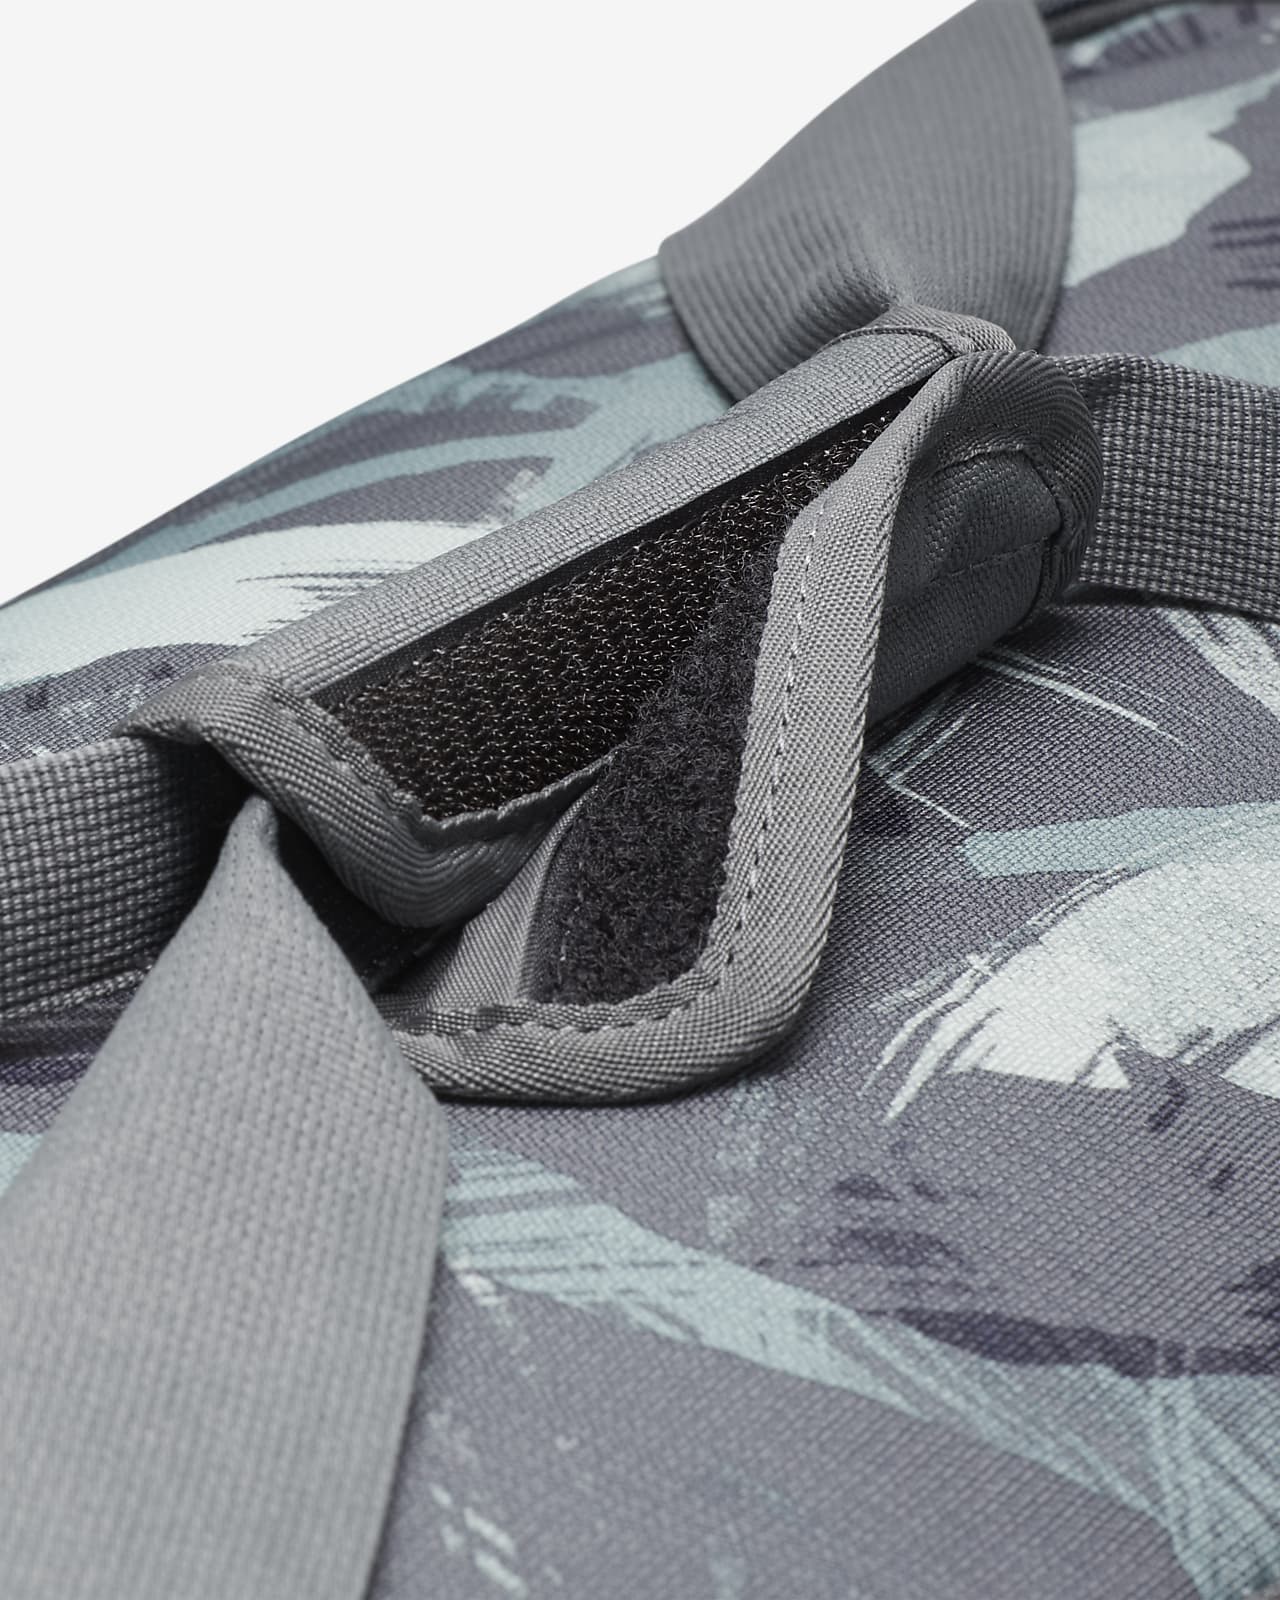 Nike Brasilia Printed Duffel Bag (Medium, 60L)